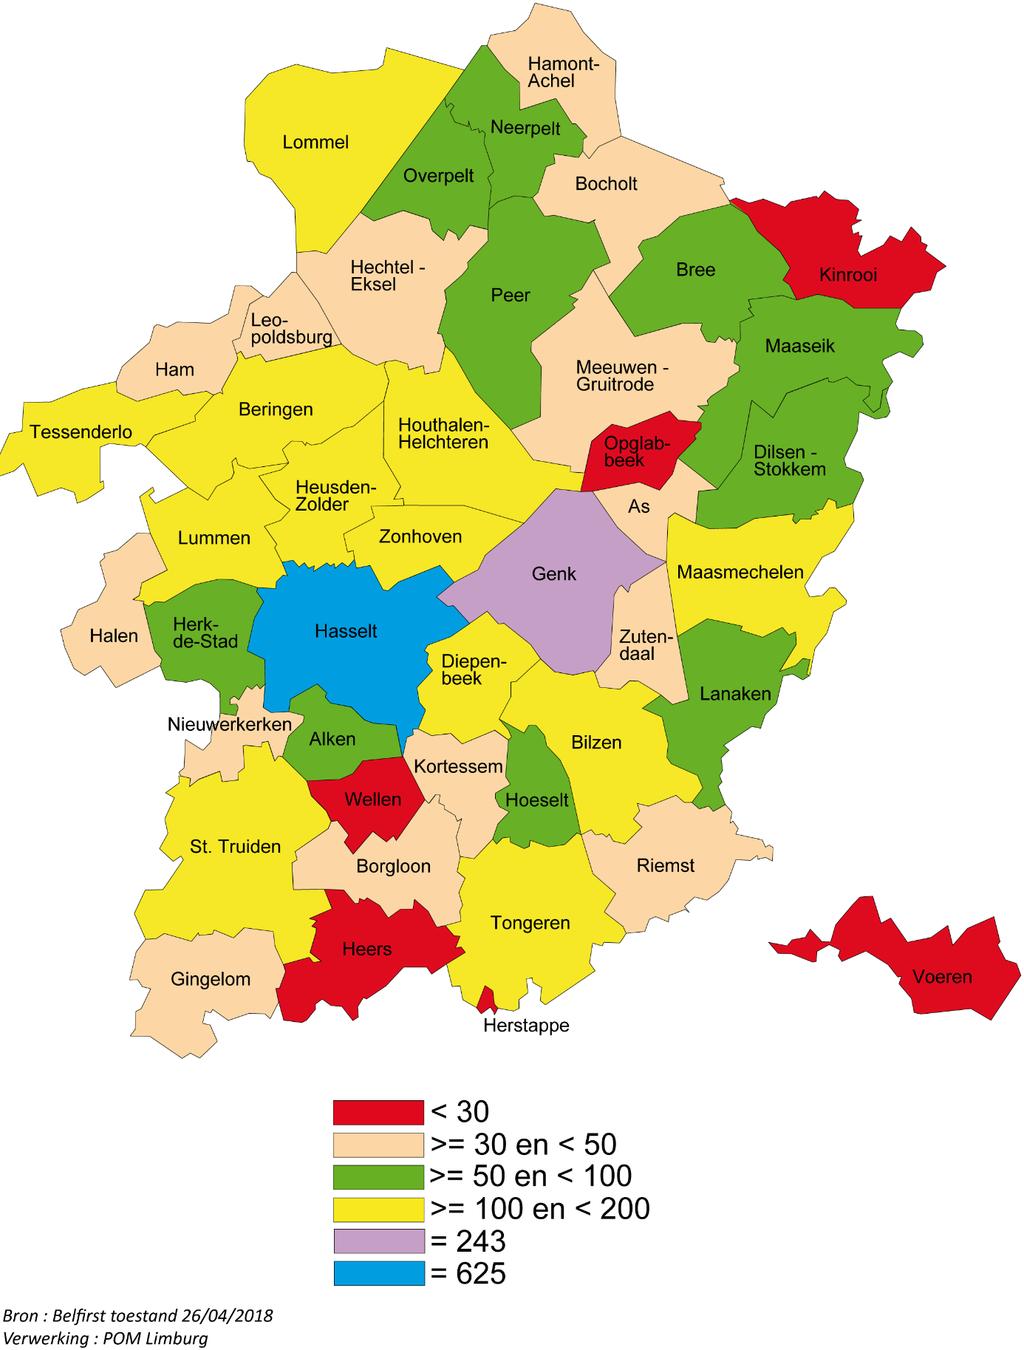 Bijlage 1 : Kaart Limburg met aantal bedrijven, incl.